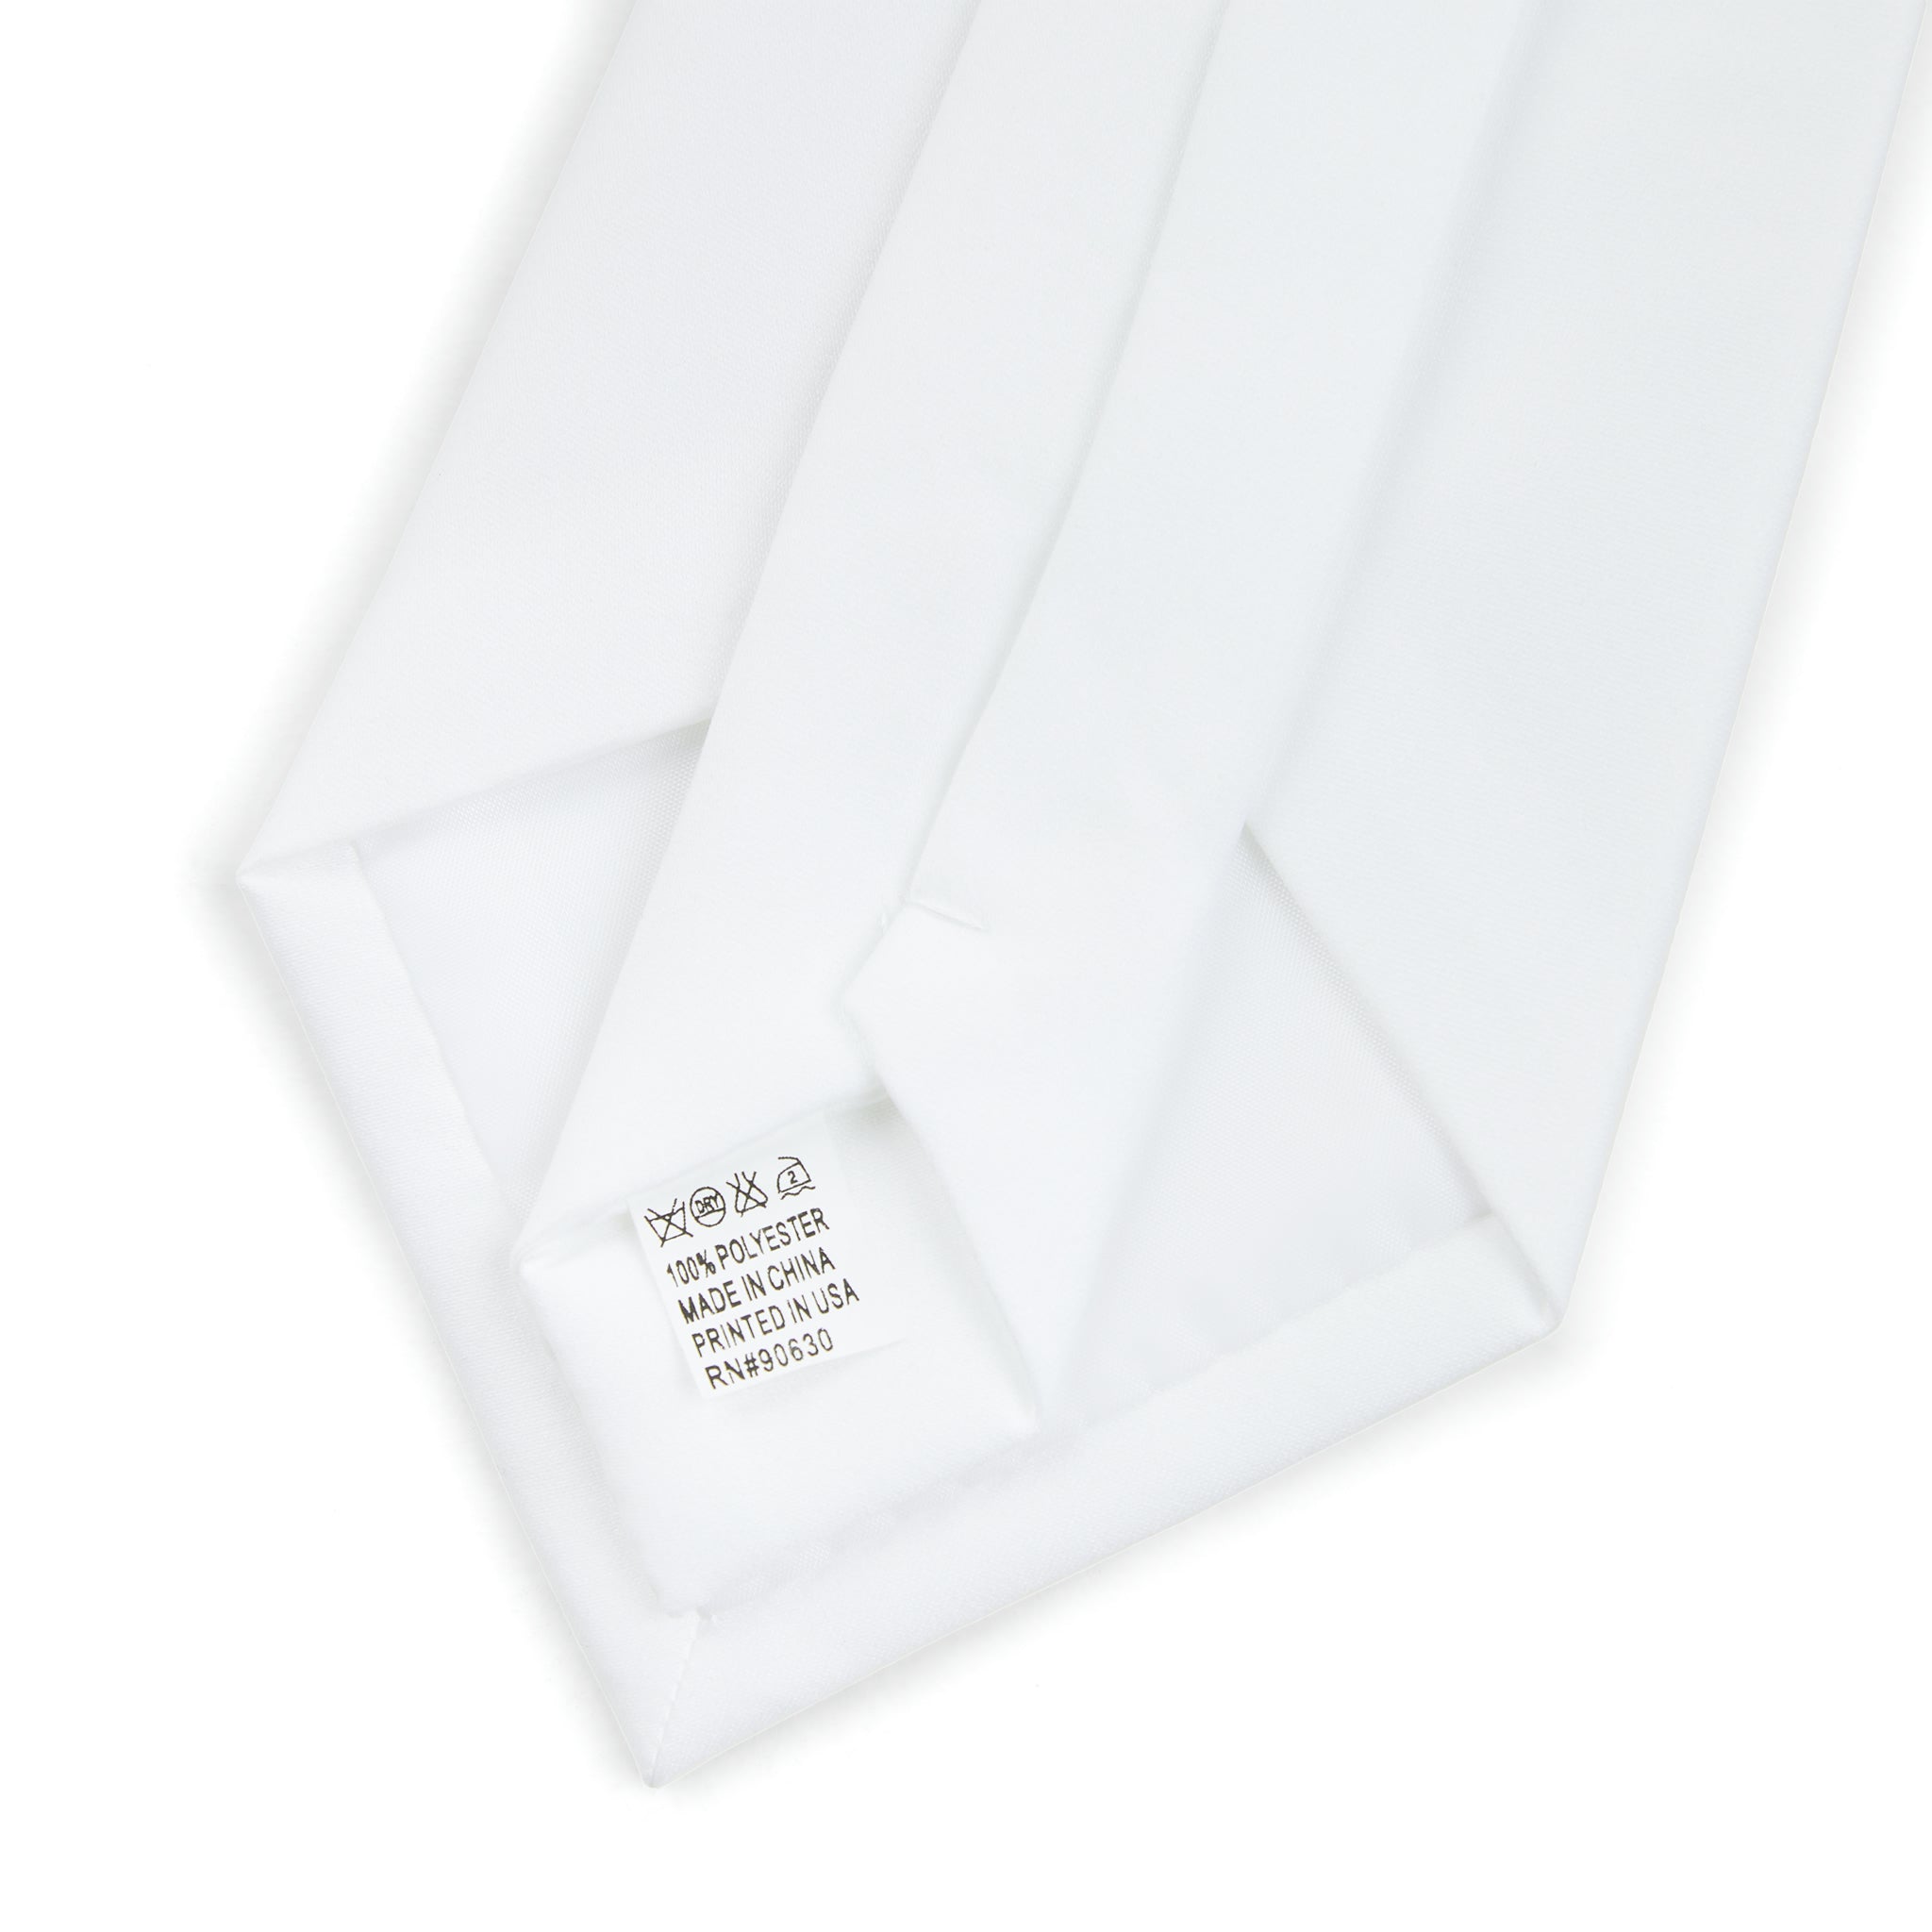 Kente Cloth Necktie